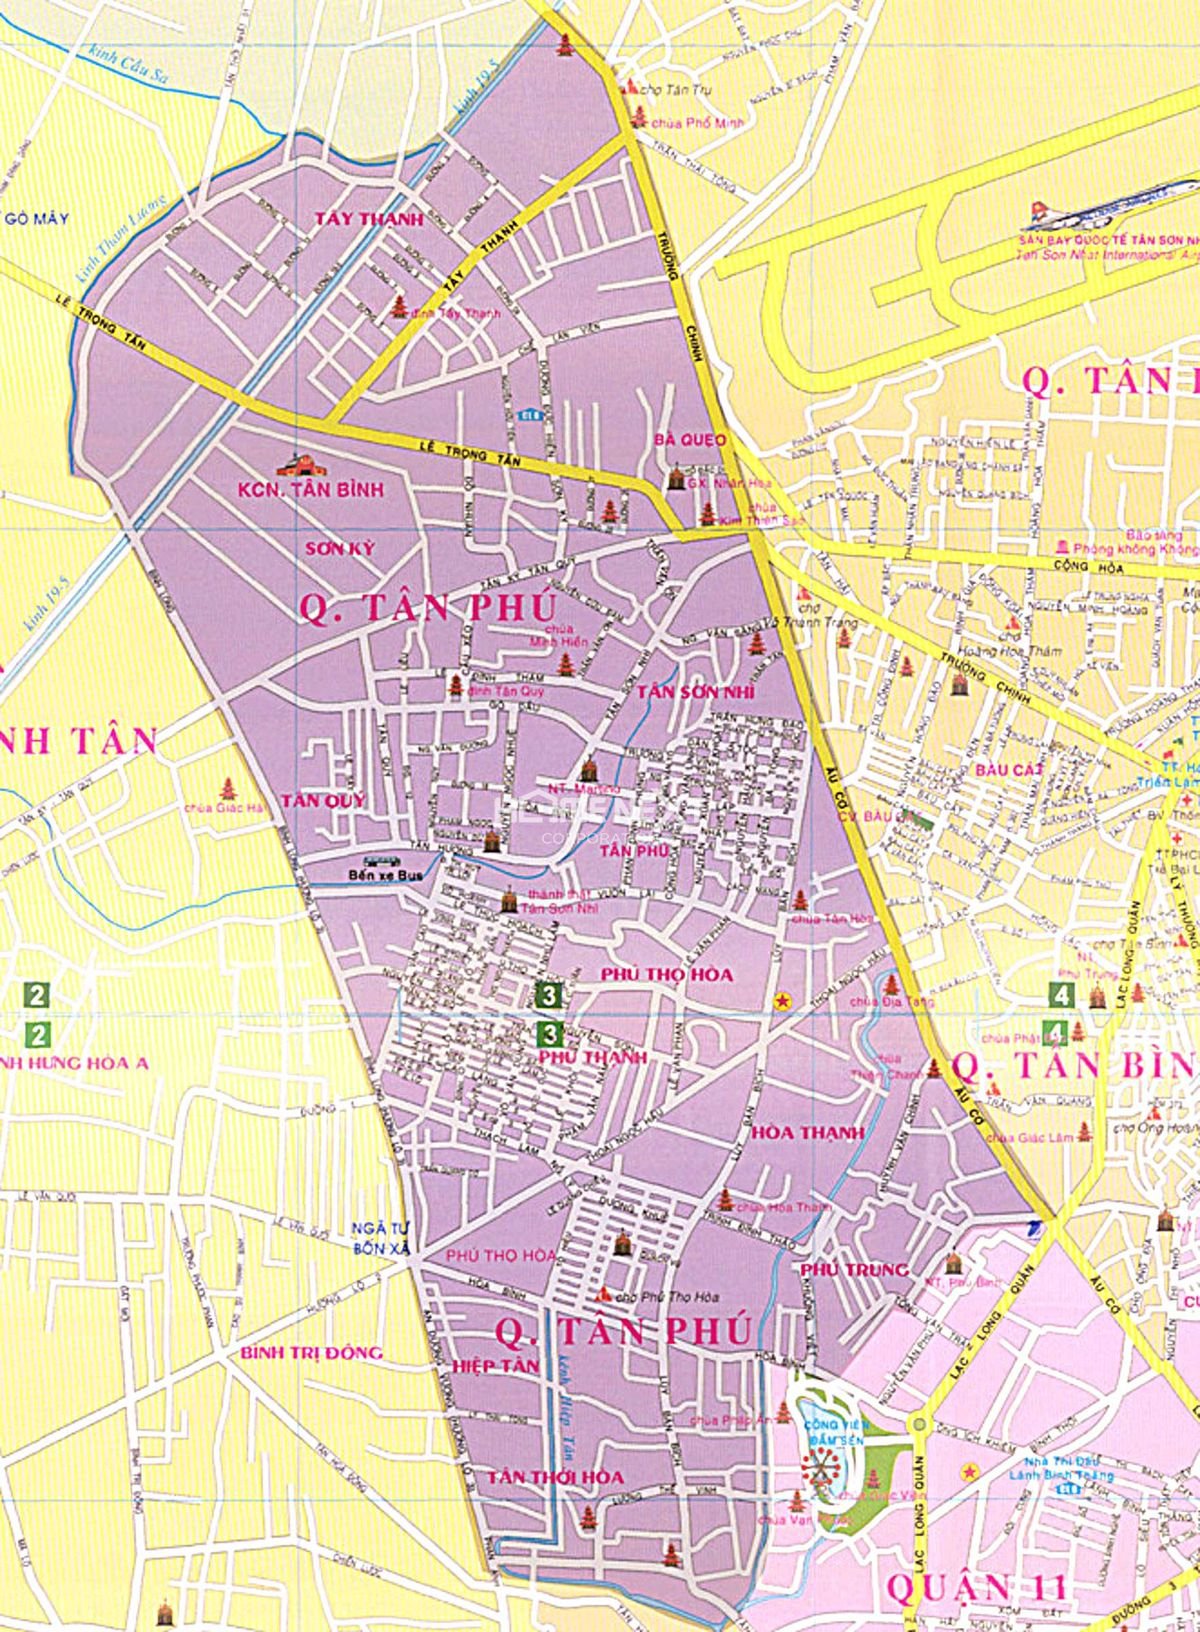 Bản đồ Quận Tân Phú: Quận Tân Phú đã và đang trở thành một trong những khu vực đô thị thành phố được quan tâm đầu tư rất nhiều. Với bản đồ Quận Tân Phú, bạn sẽ không chỉ biết được thông tin về các địa điểm du lịch, mua sắm hay các điểm tiện ích khác, mà còn nhận được nhiều thông tin hữu ích để có thể quyết định chọn mua bất động sản đúng nhu cầu của mình.